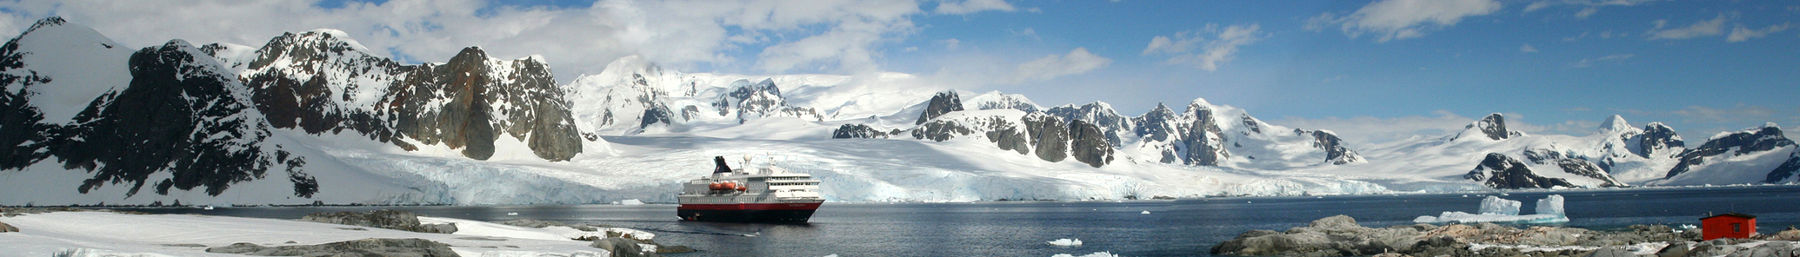 Antarktični polotok-banner.jpg